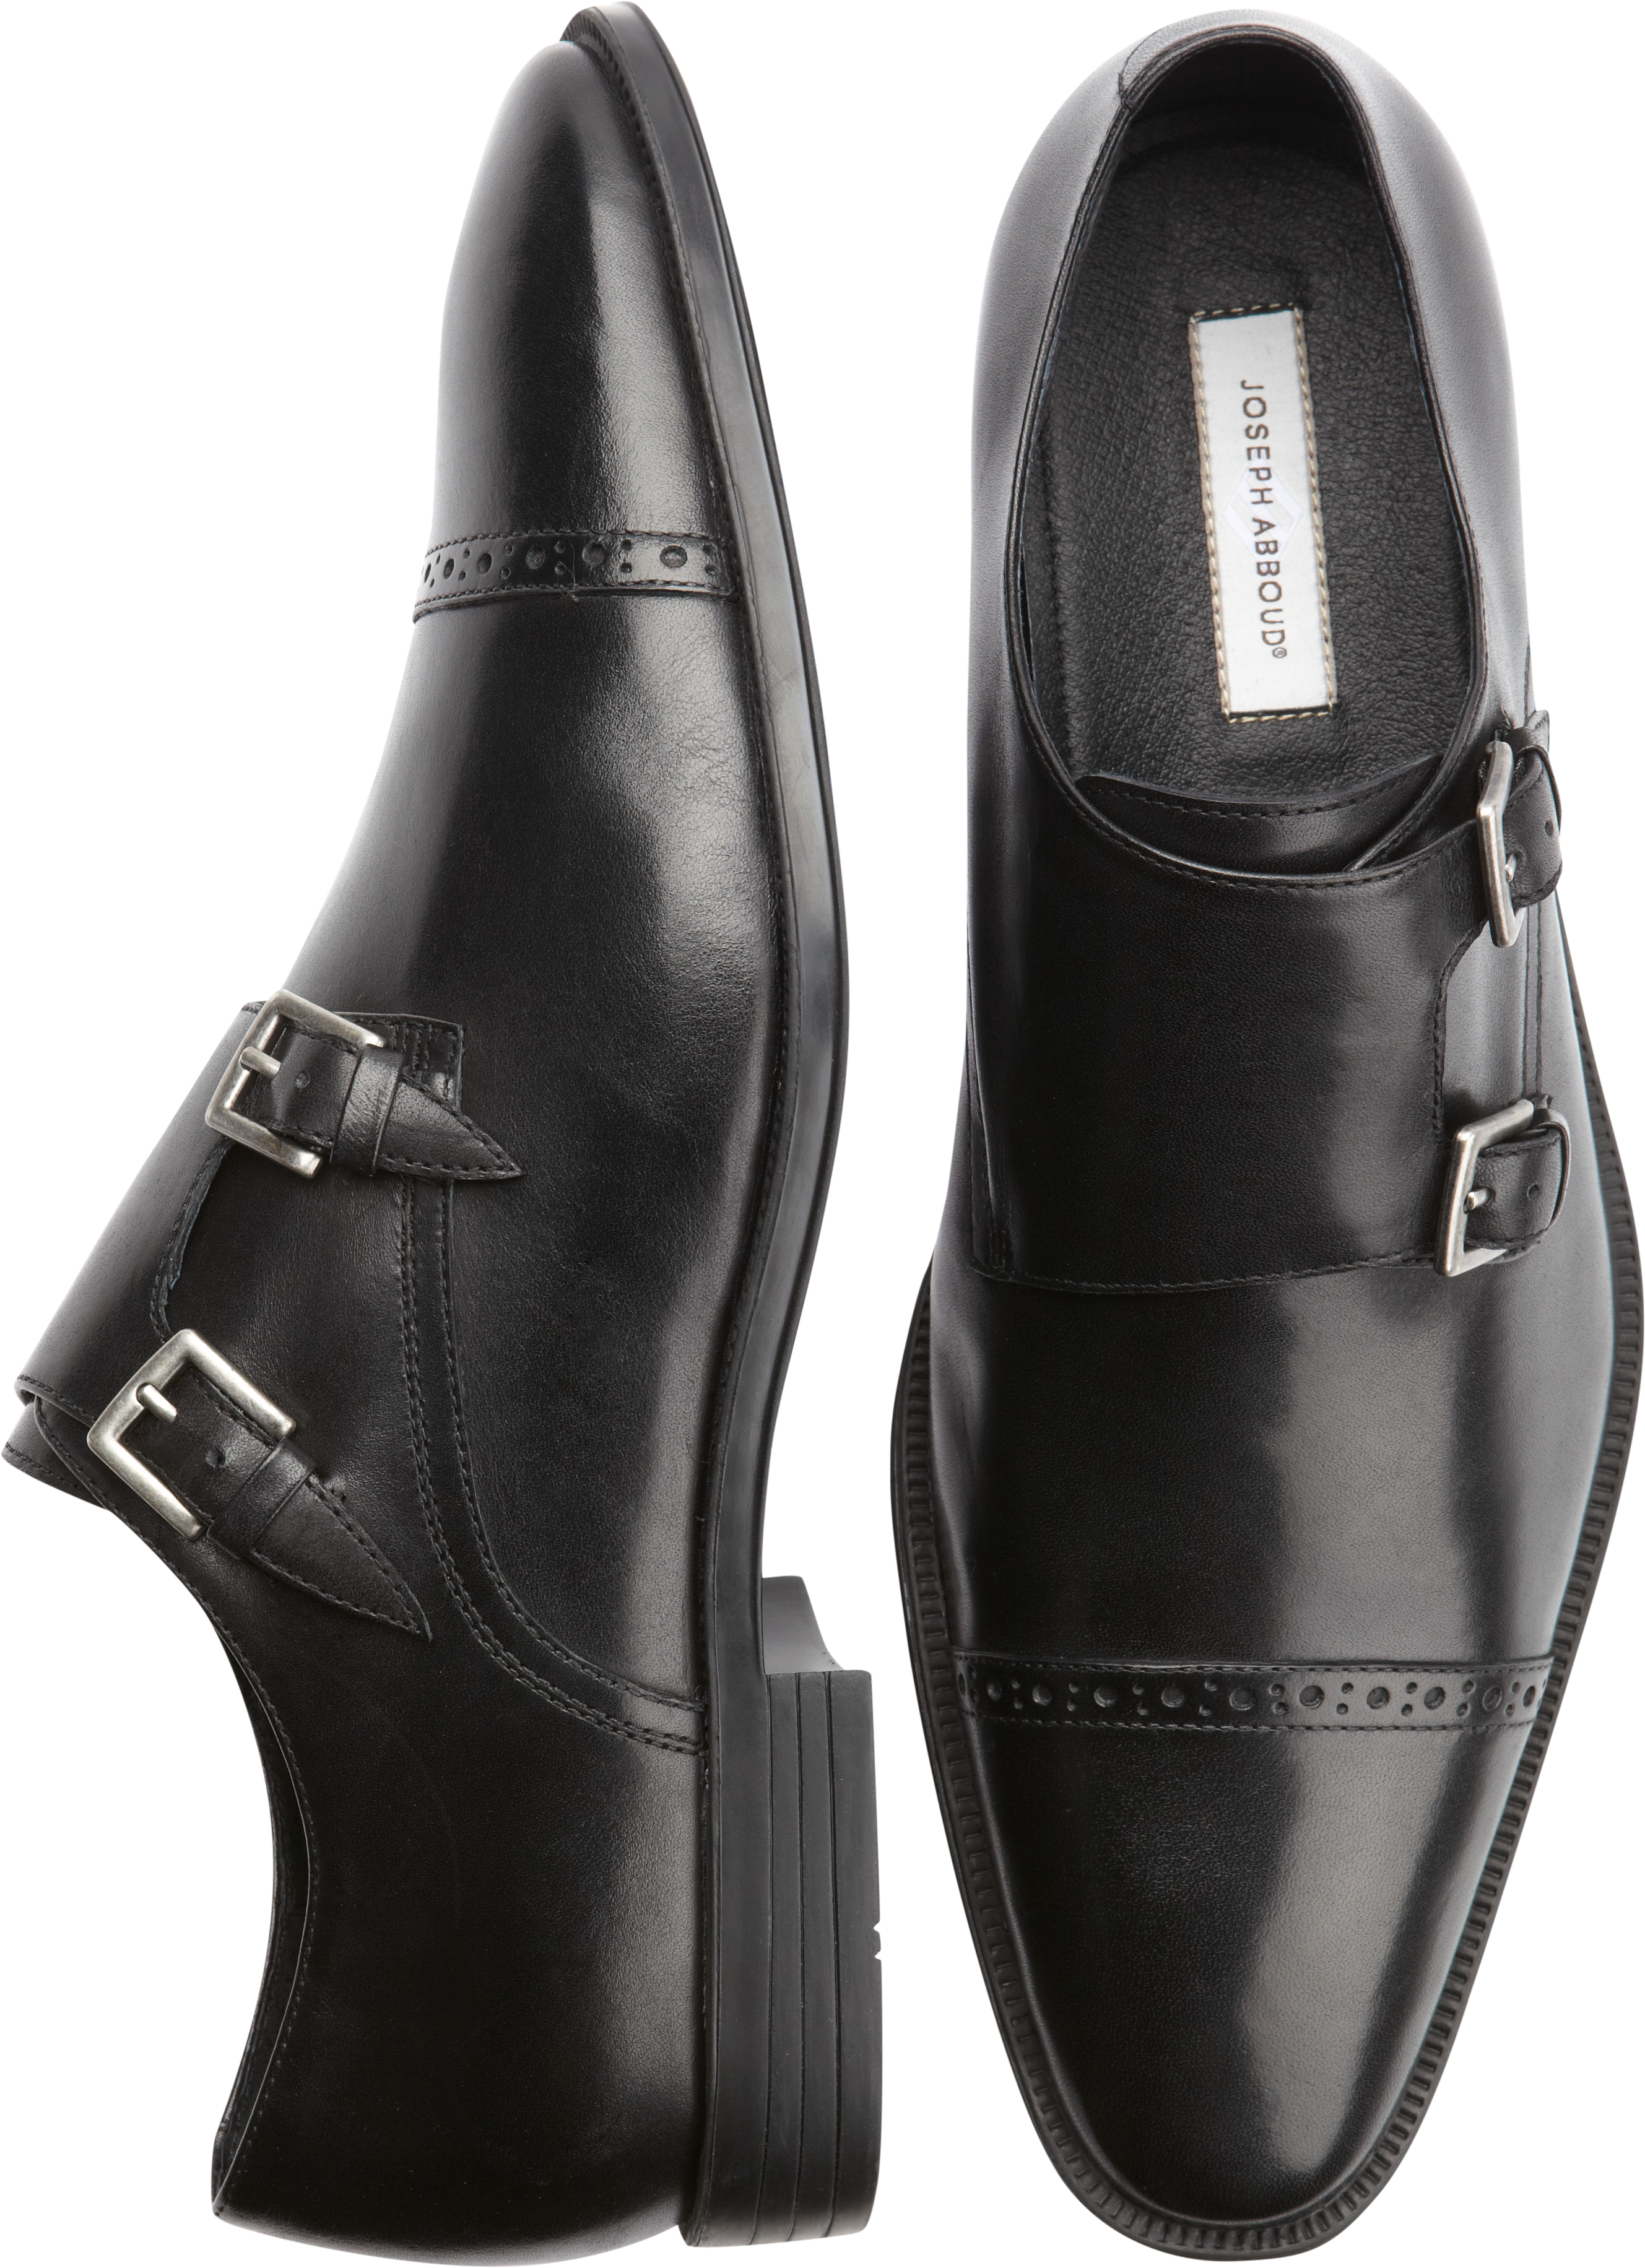 Joseph Abboud Foxfield Black Double Monk Strap Shoes - Dress Shoes ...